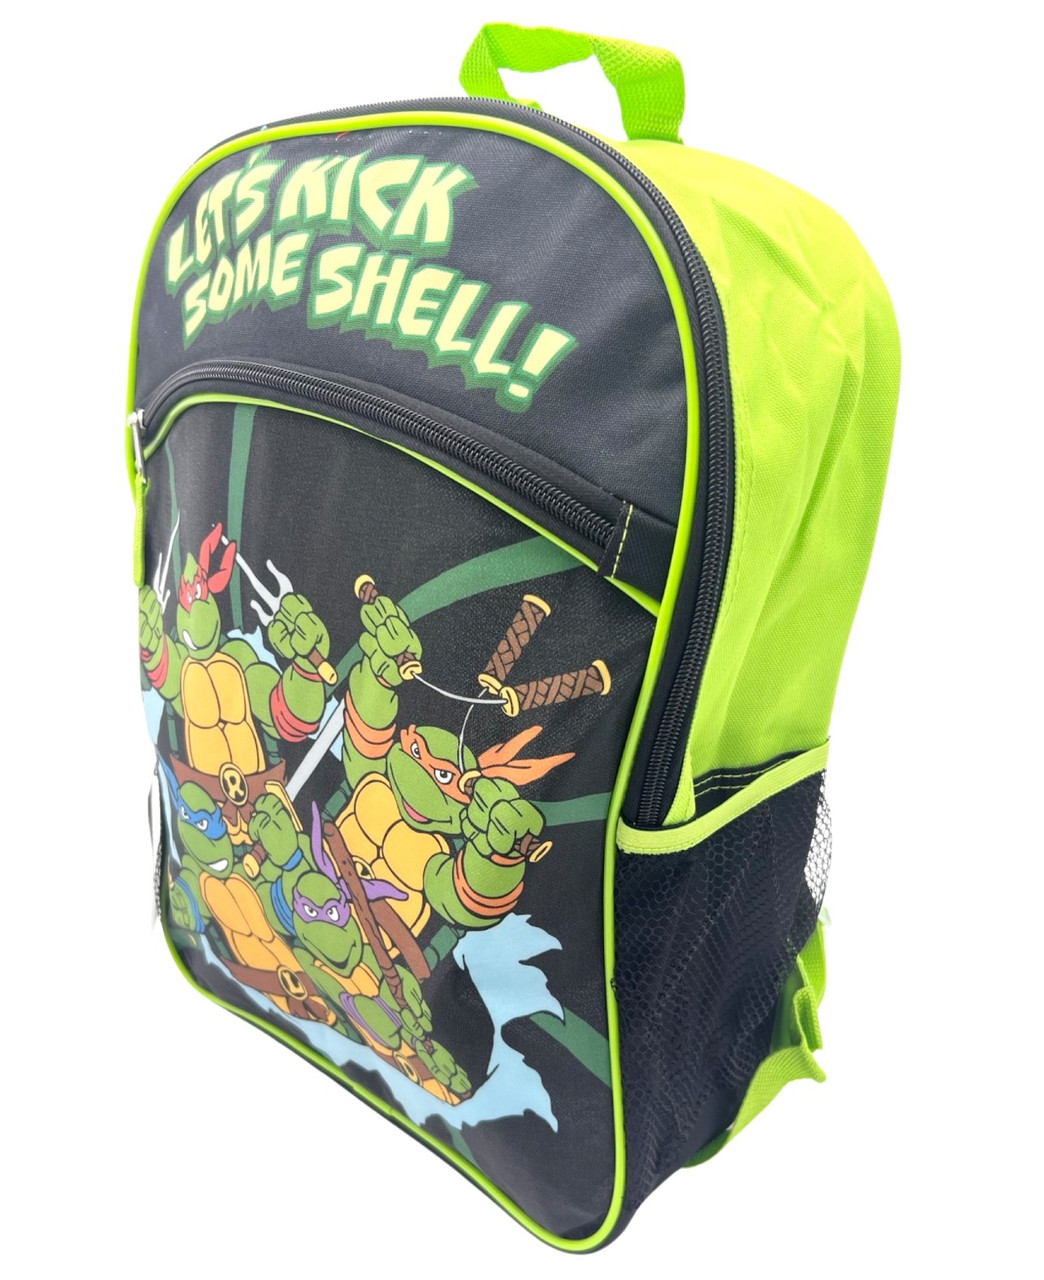 Teenage Mutant Ninja Turtles Kids' 16 Backpack